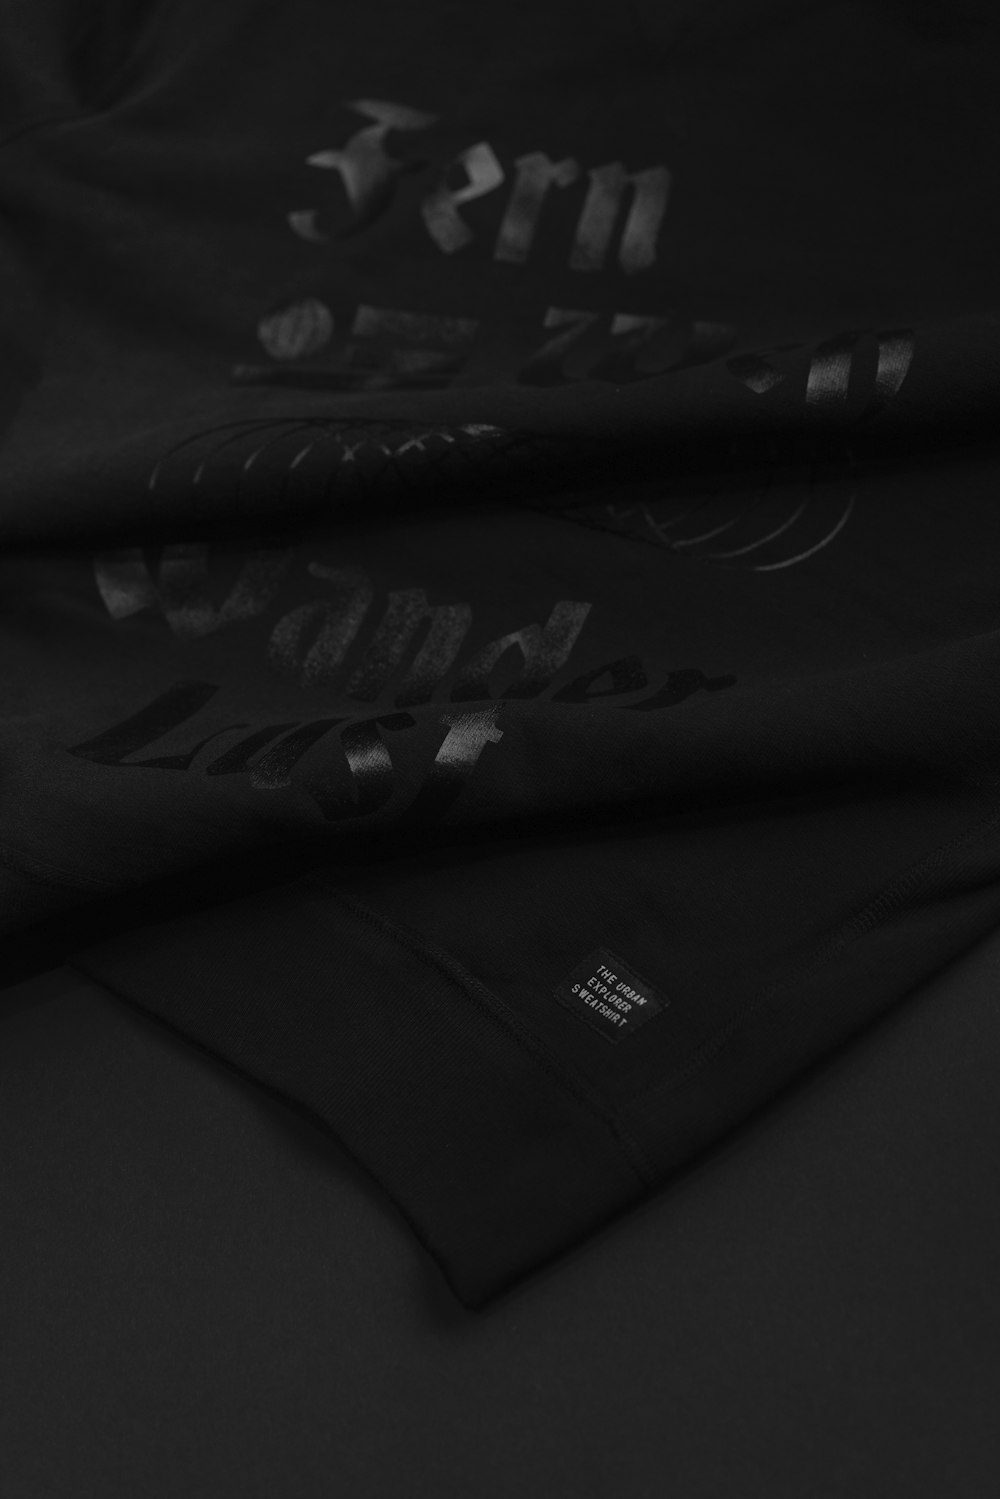 um close up de uma camisa preta com escrita nela